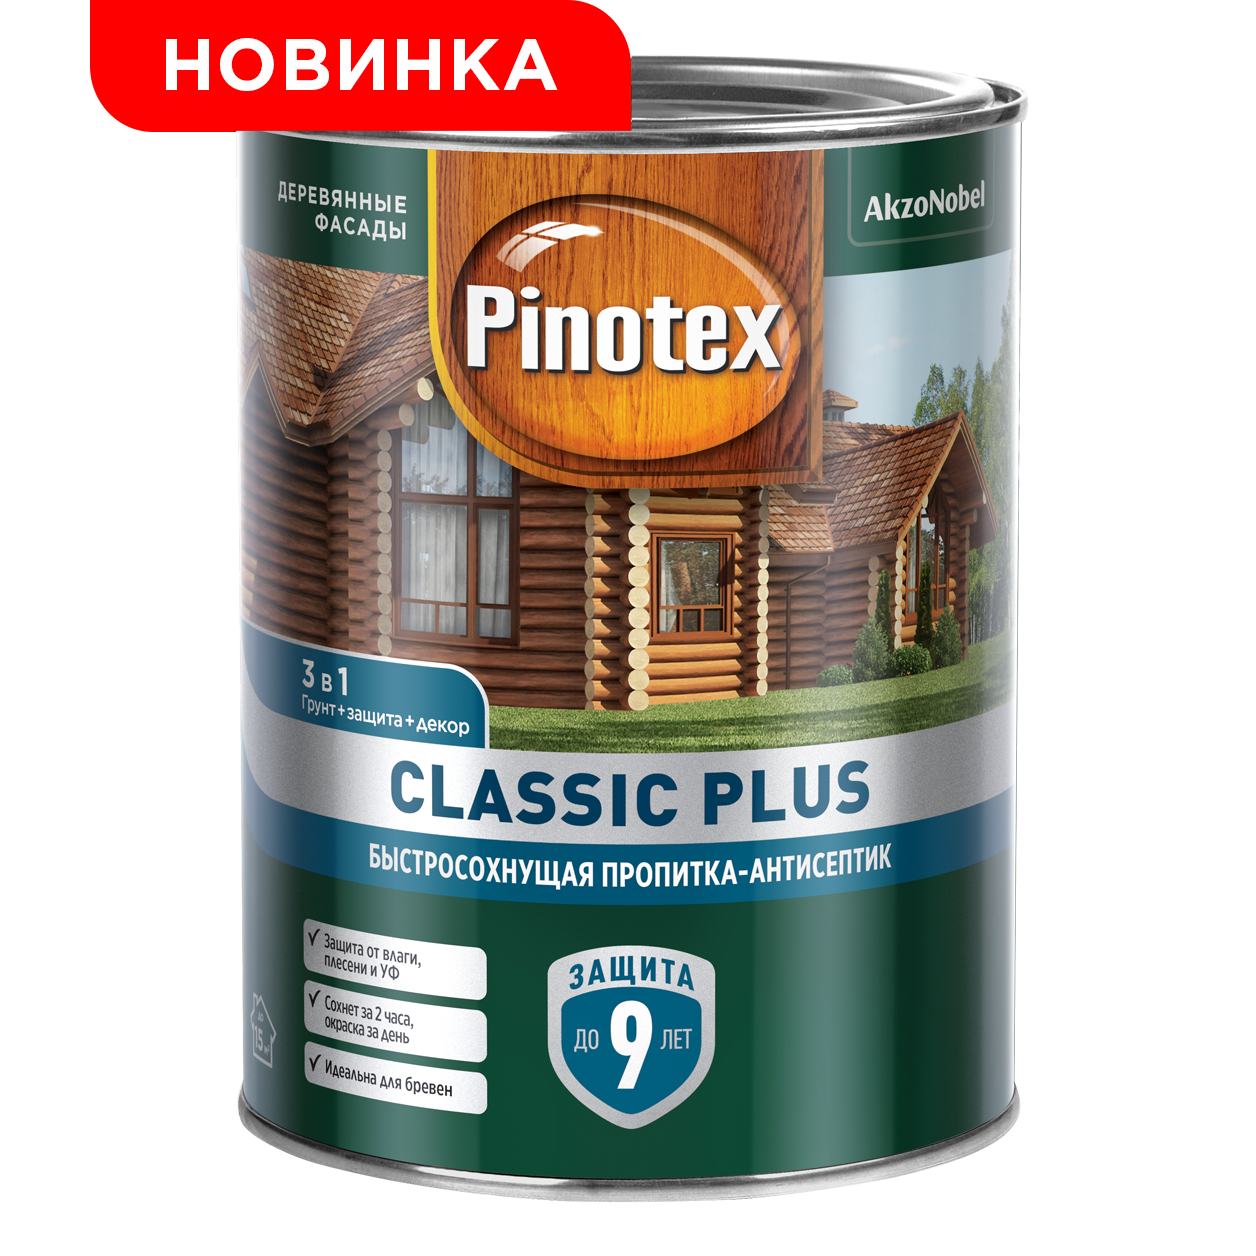 Антисептик Pinotex Classic Plus 3в1 (2.5л) База под колеровку CLR